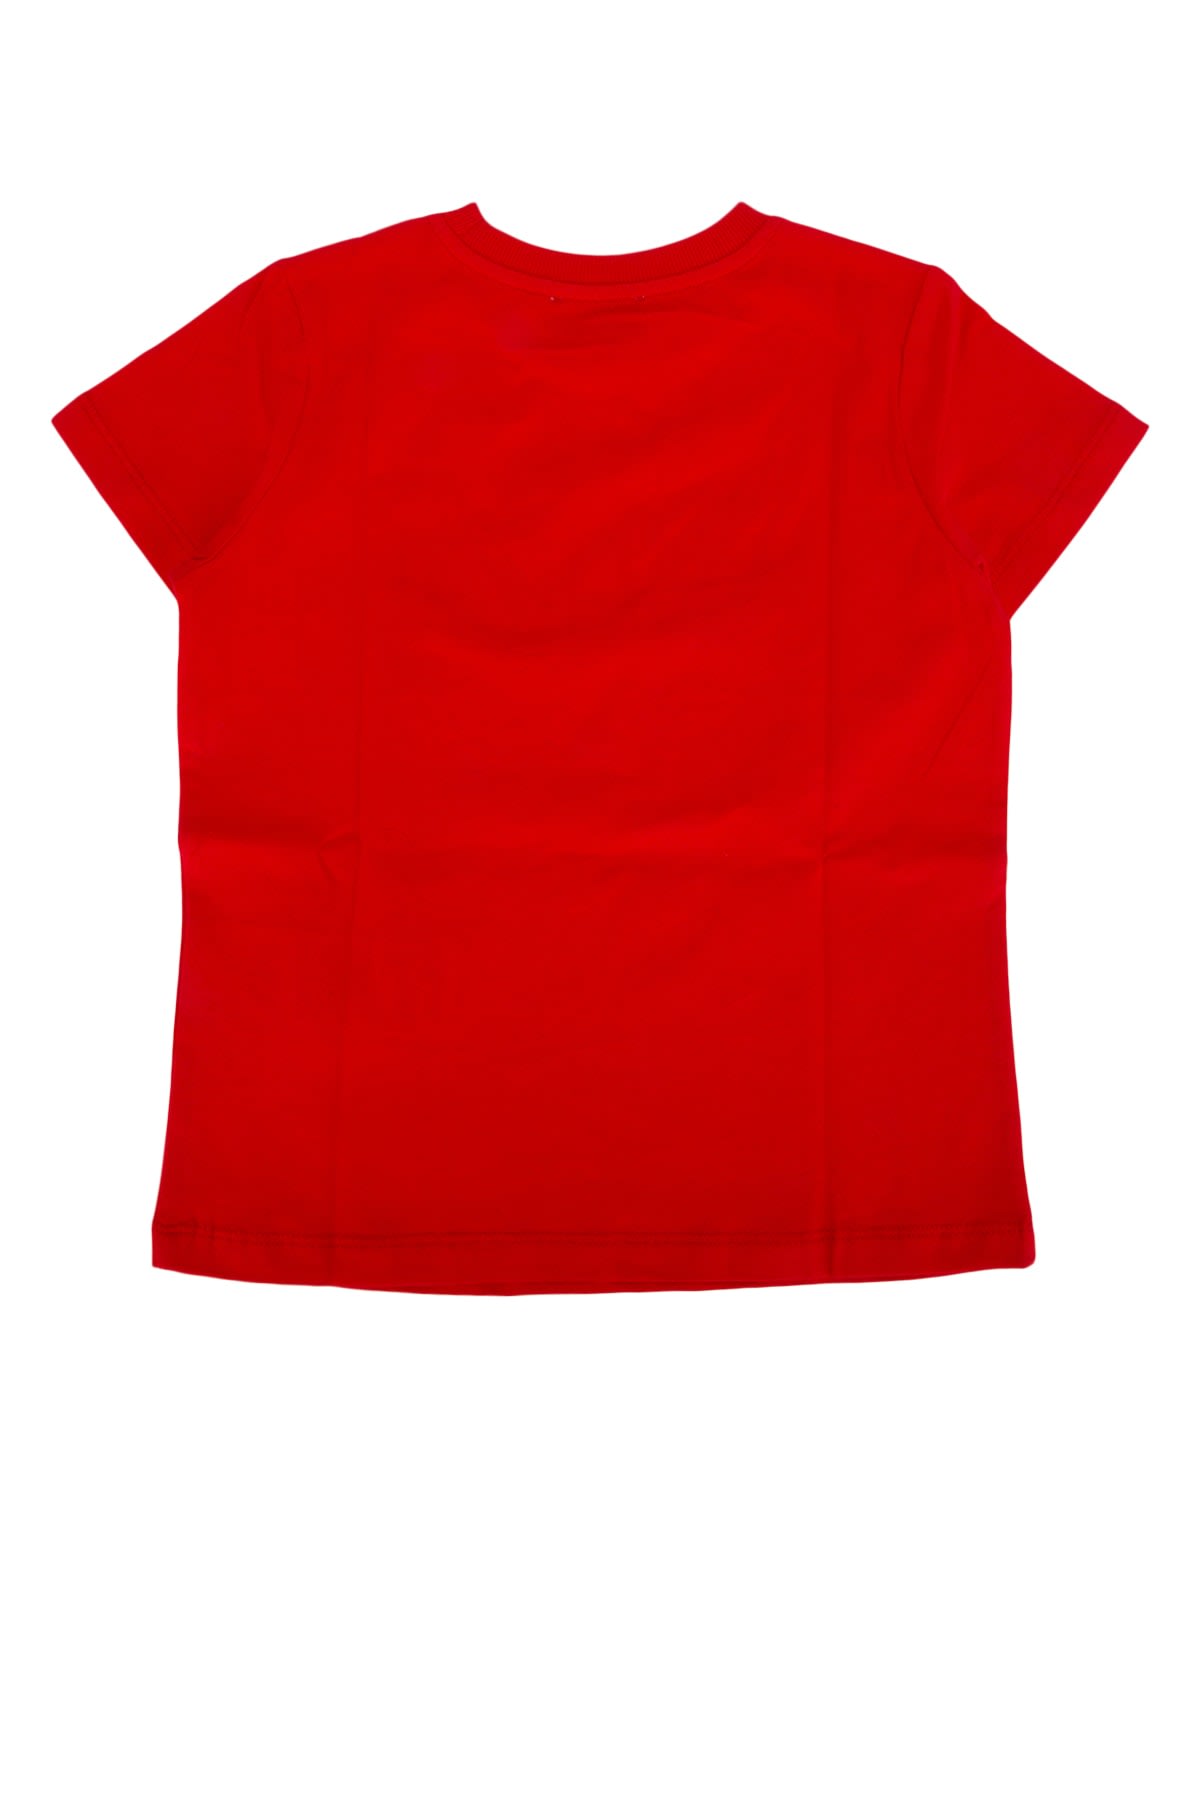 Moschino Kids' T-shirt In Poppyred